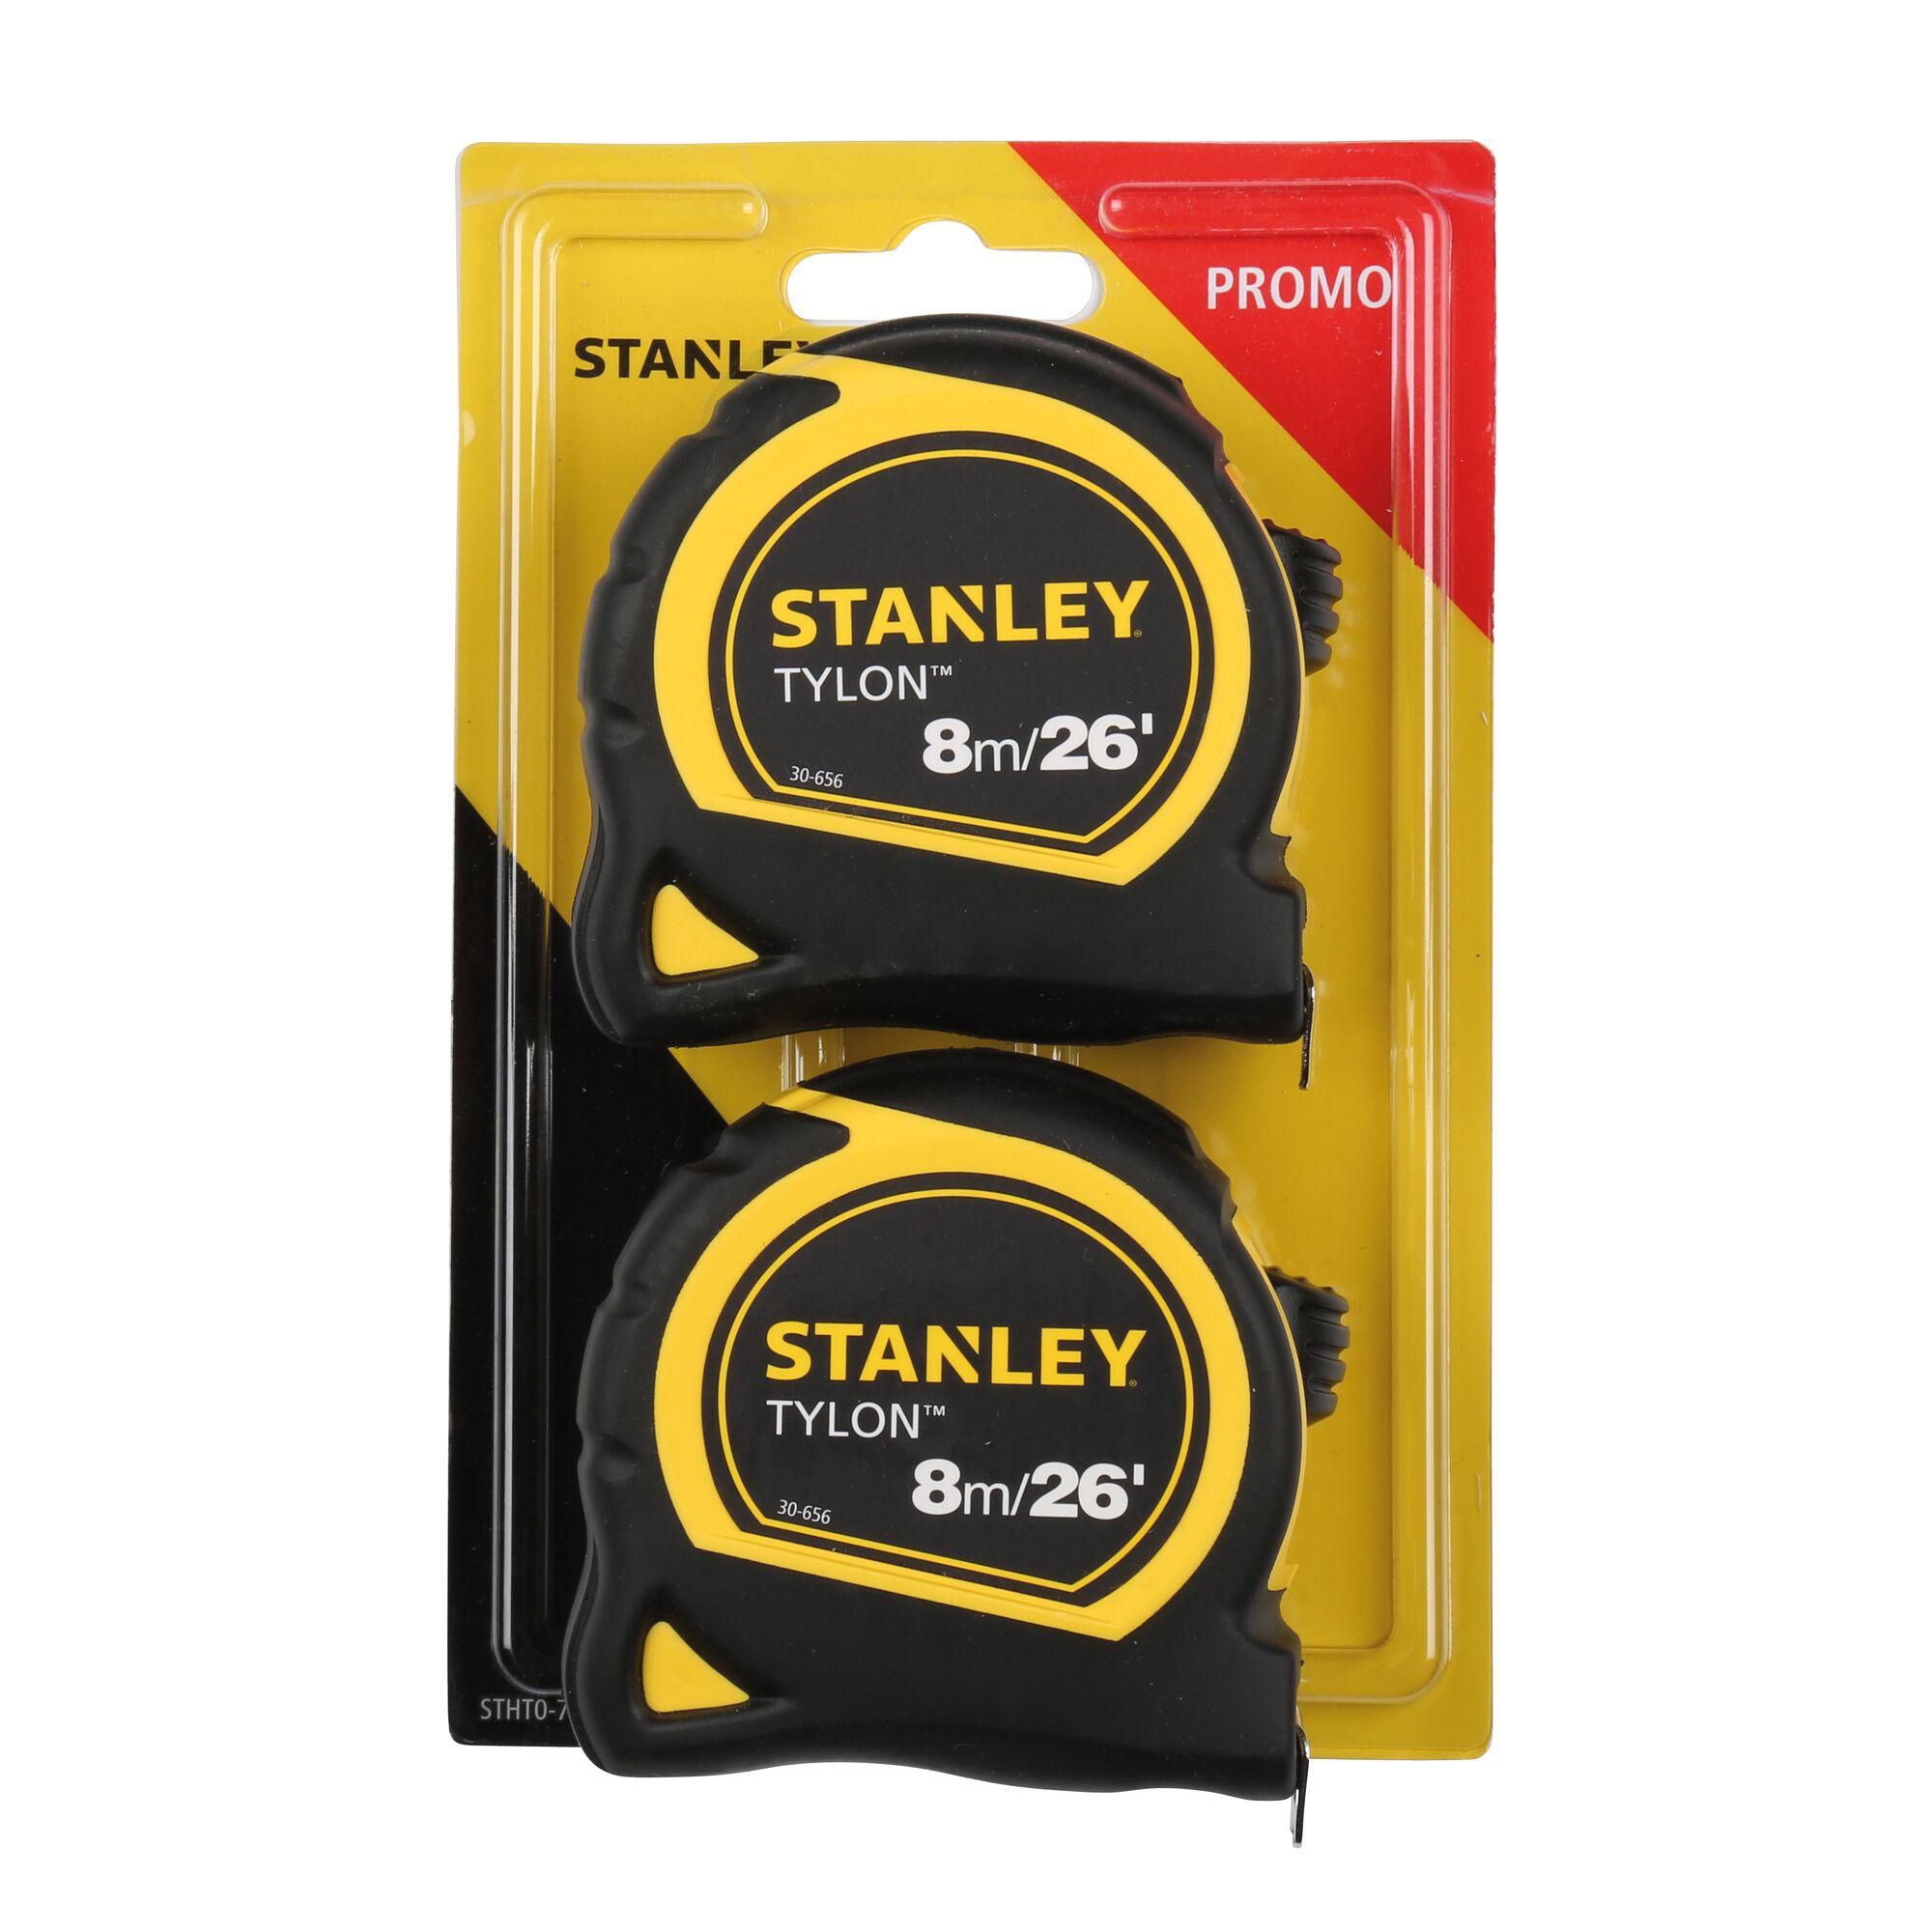 Stanley Tylon Tape measure 8m, Pack of 2